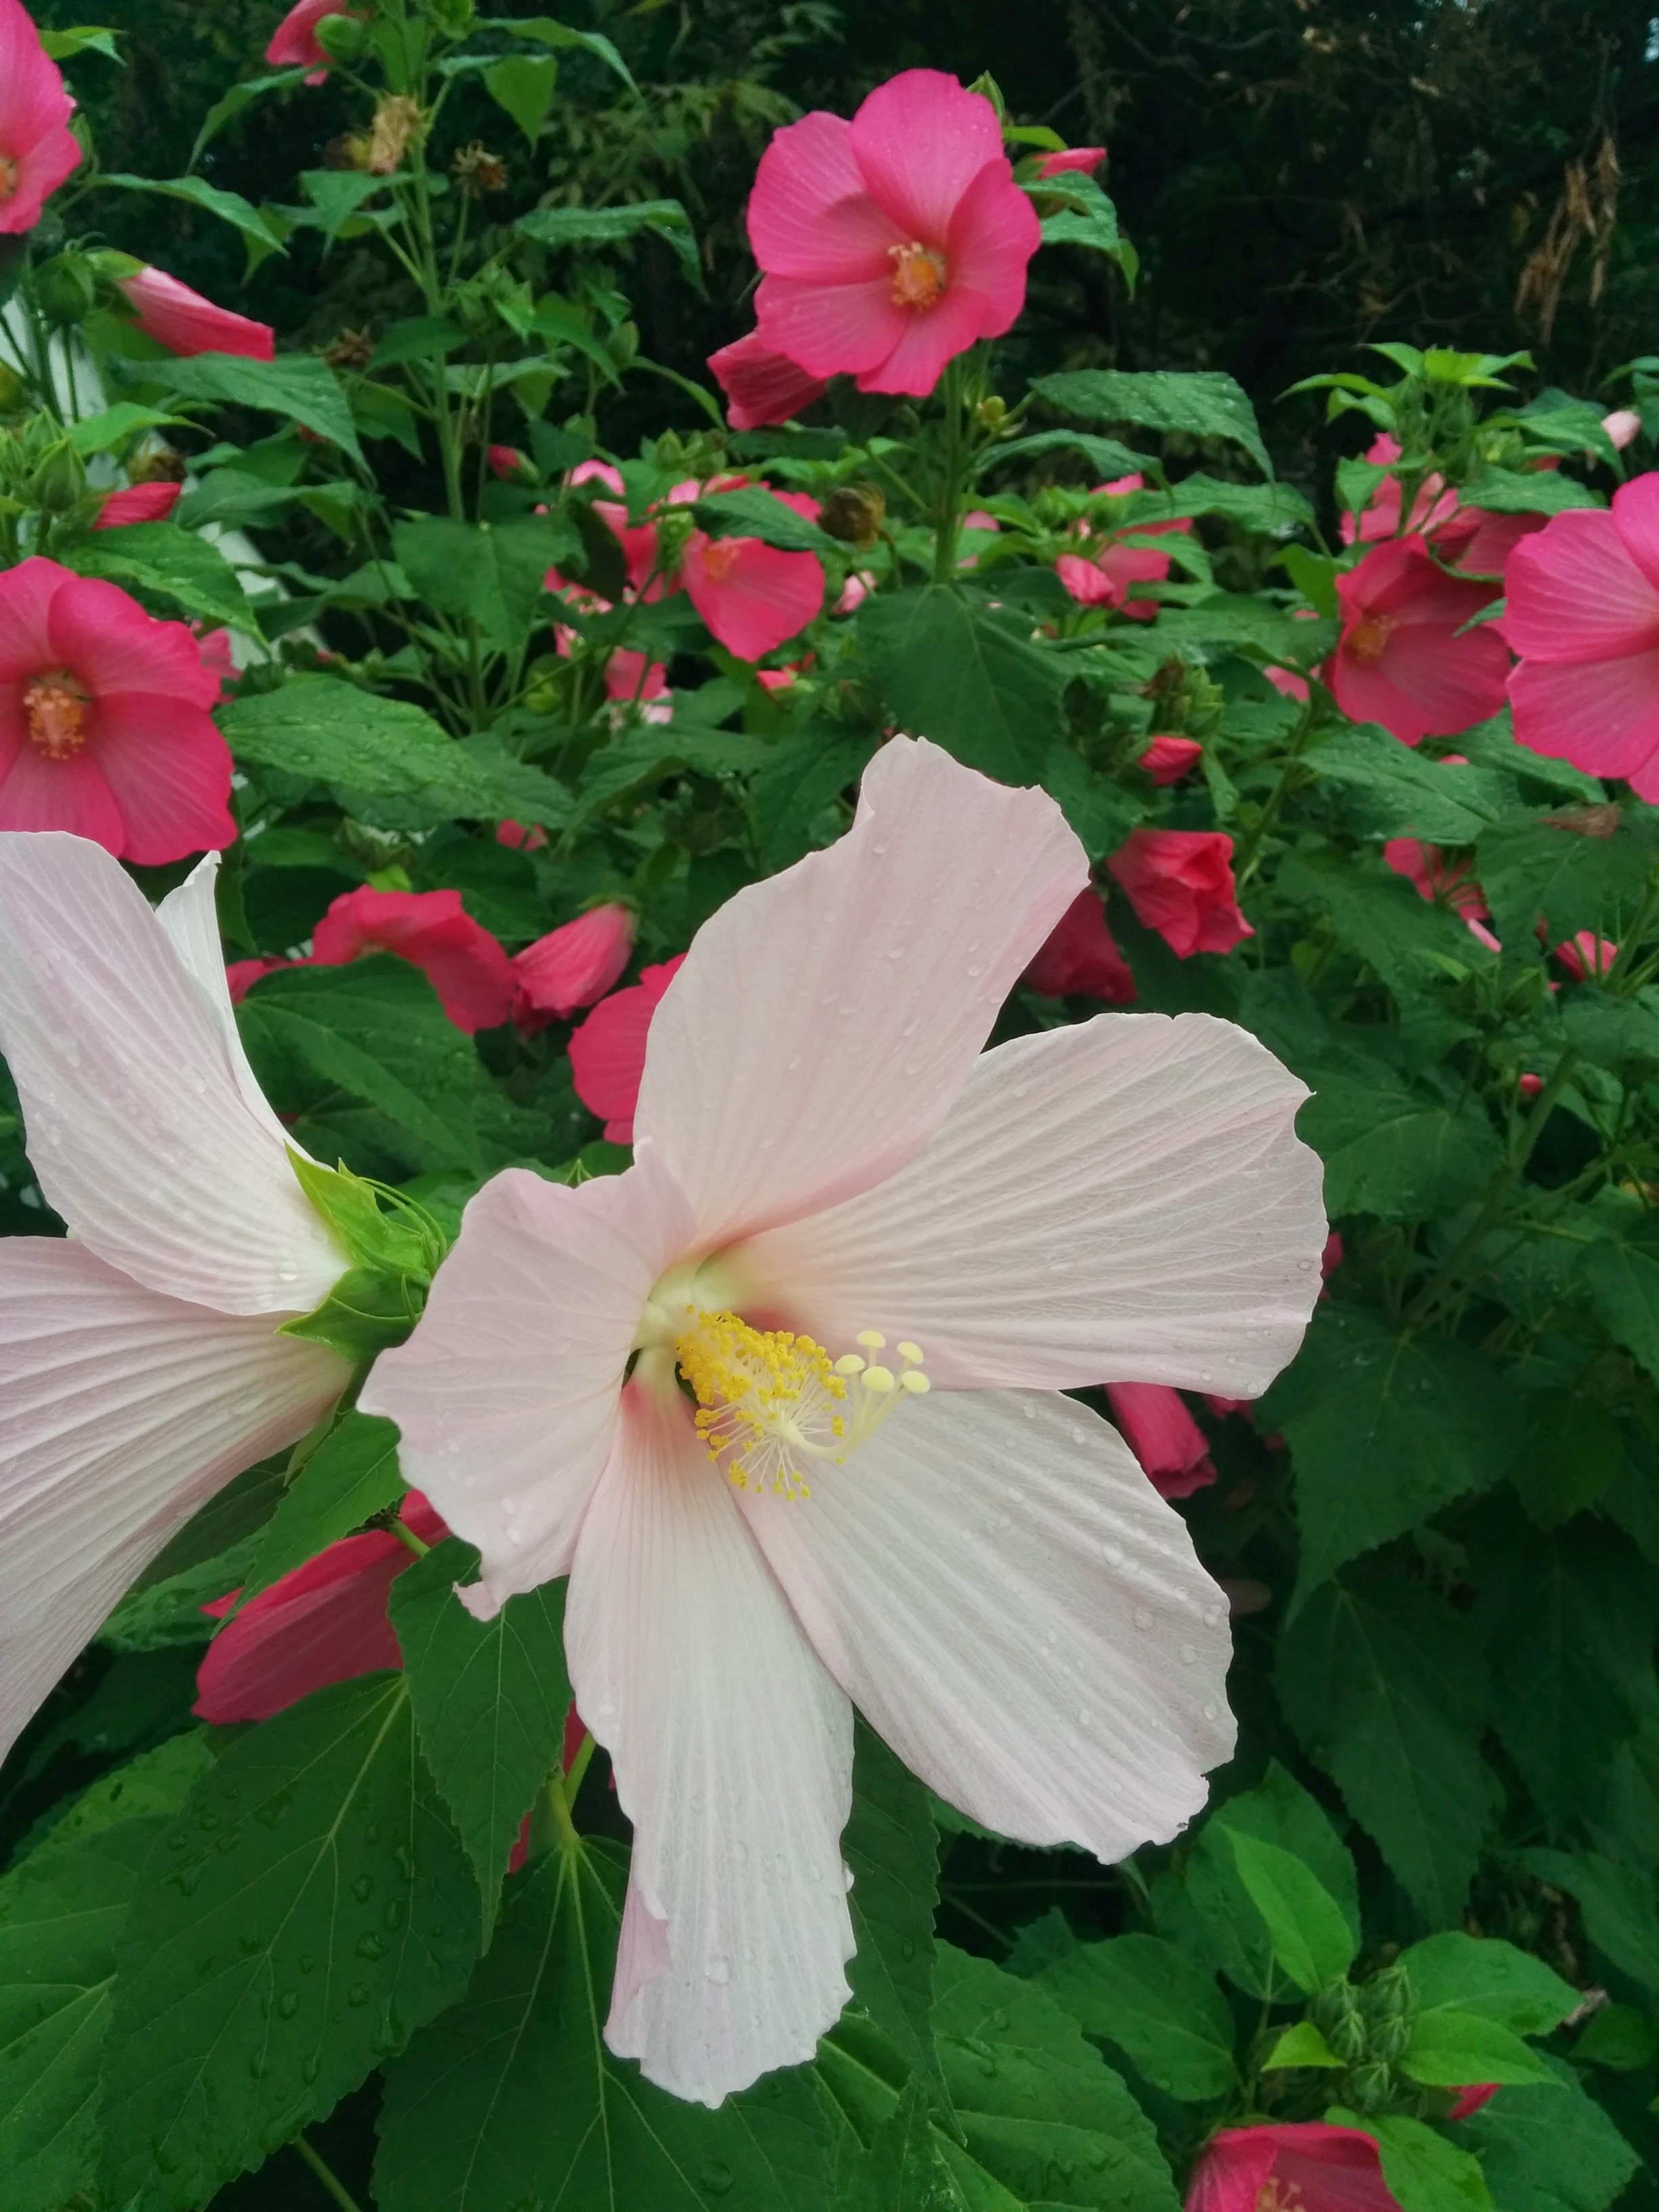 IMG_20140723_134047.jpg 하얀색 꽃, 분홍색 꽃을 피운 접시꽃